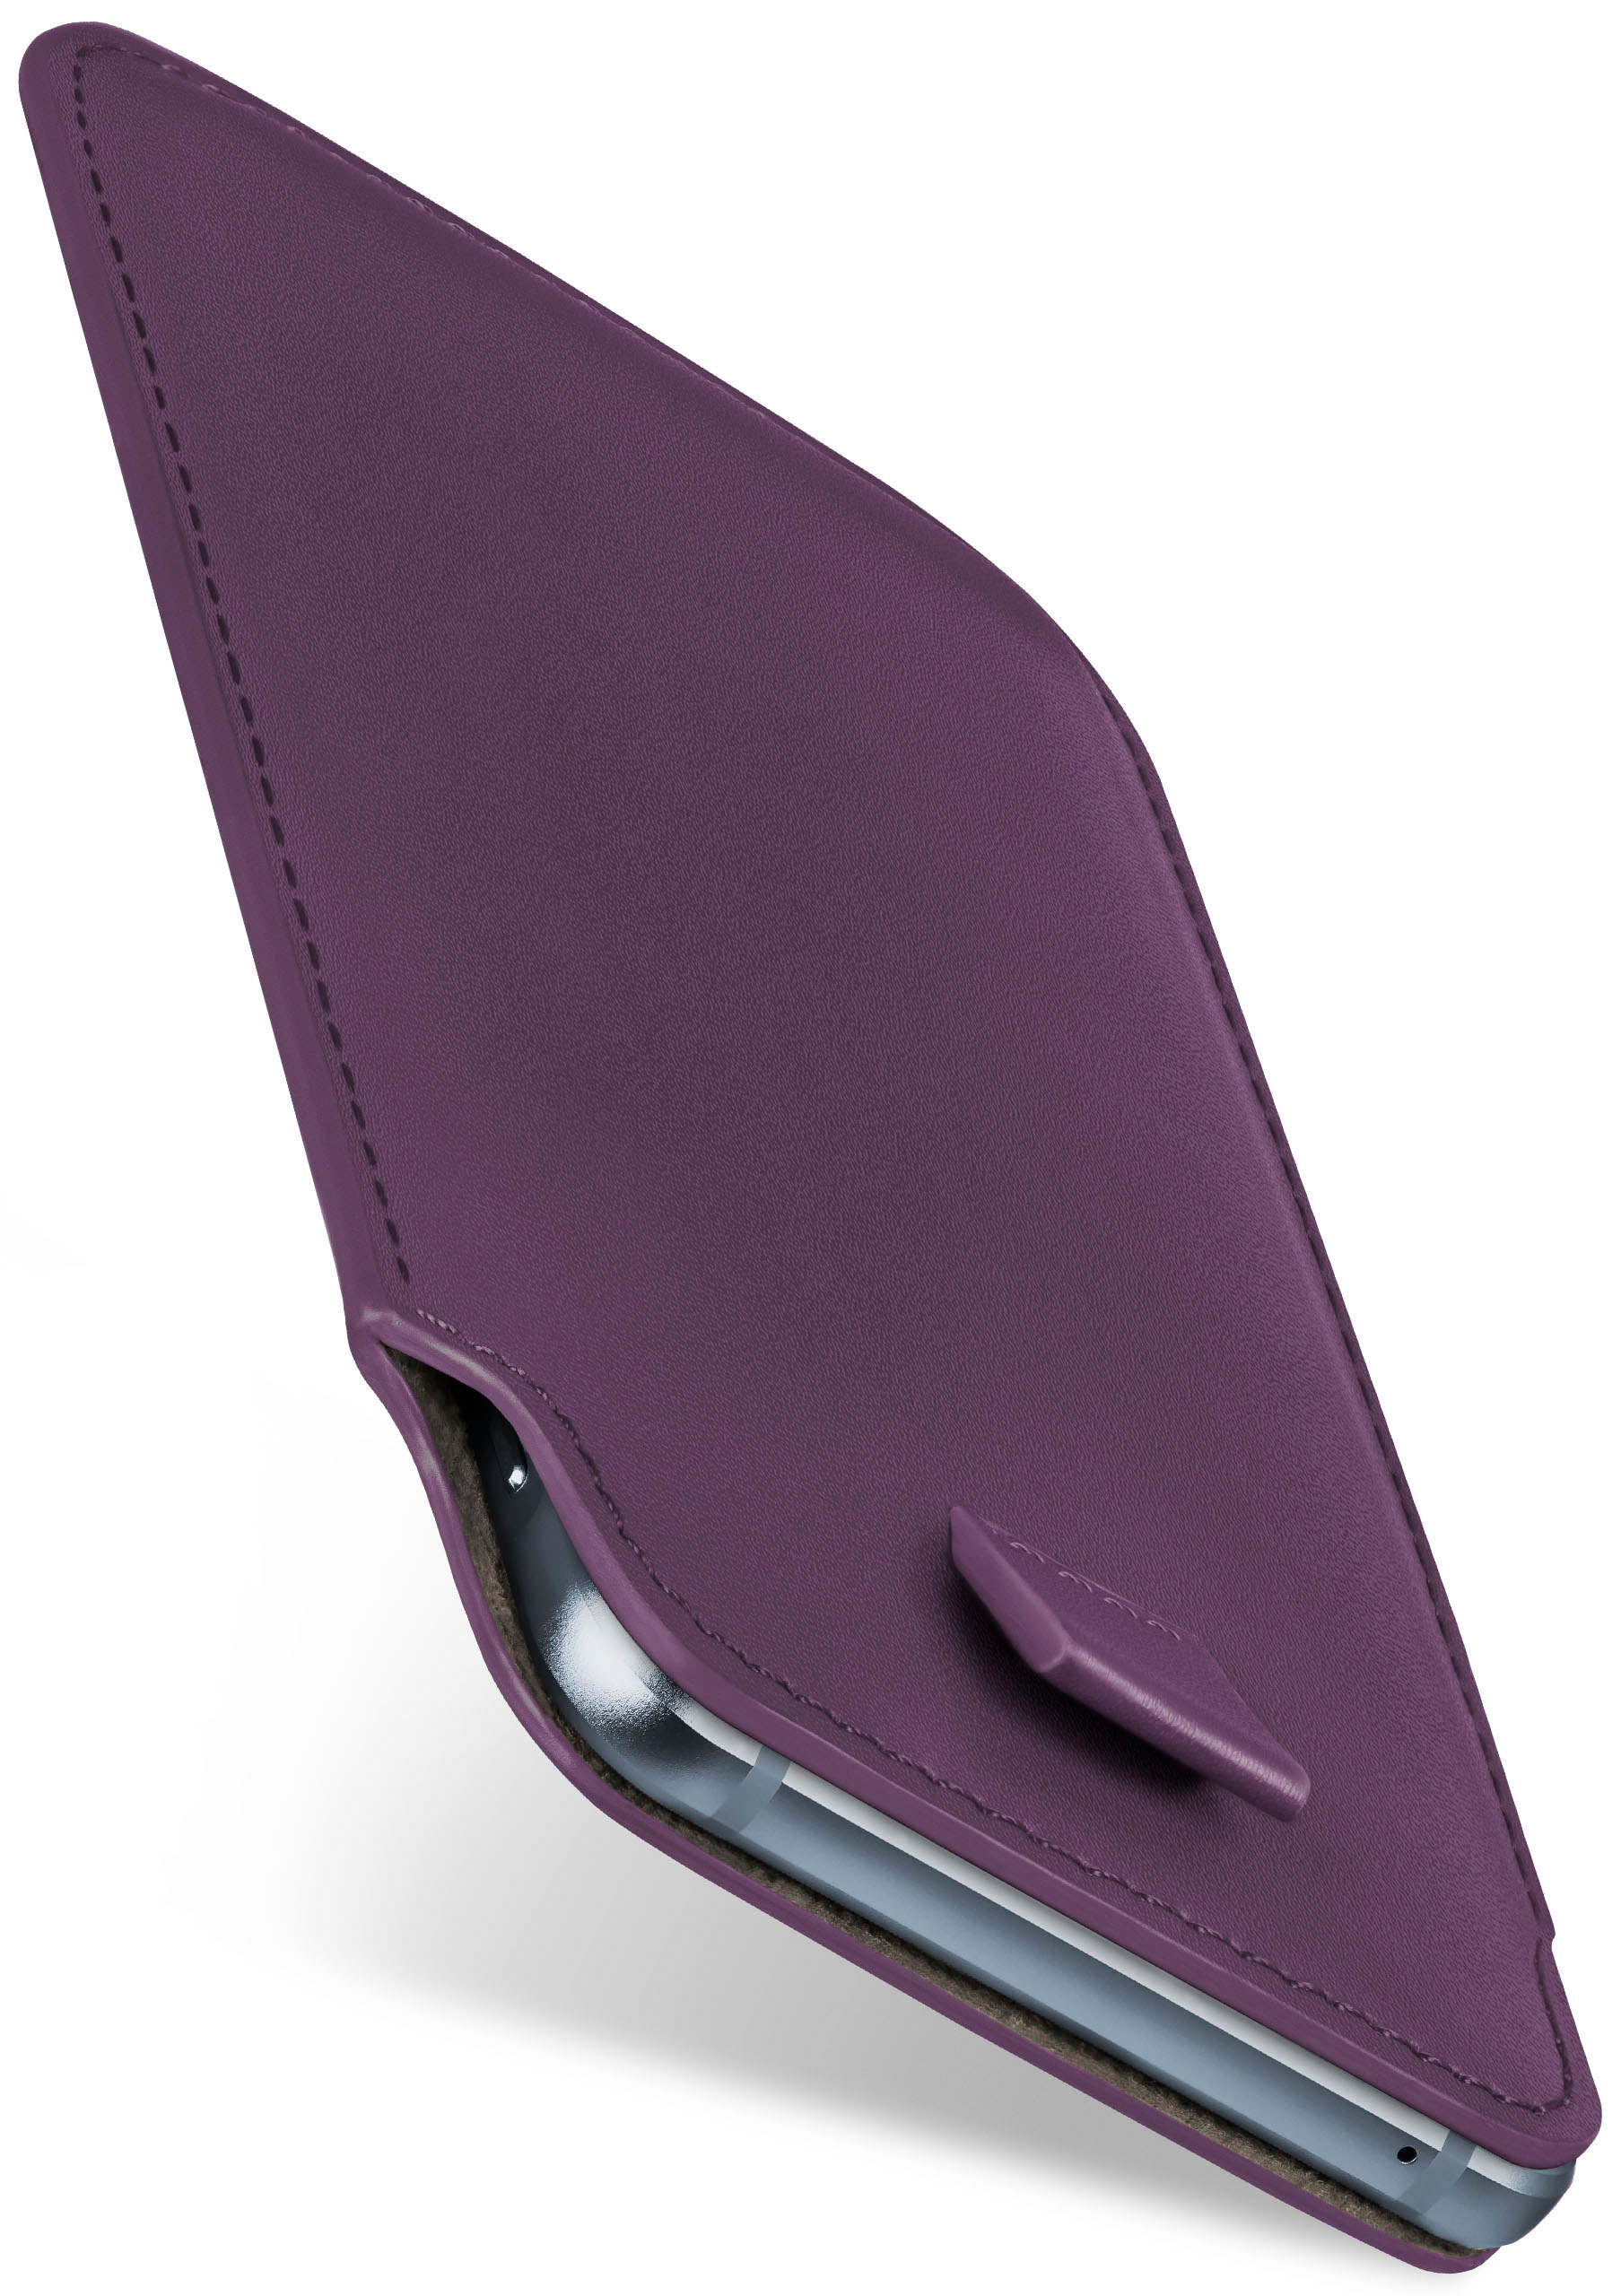 MOEX Slide Nokia, Full Plus, Indigo-Violet 7 Cover, Case